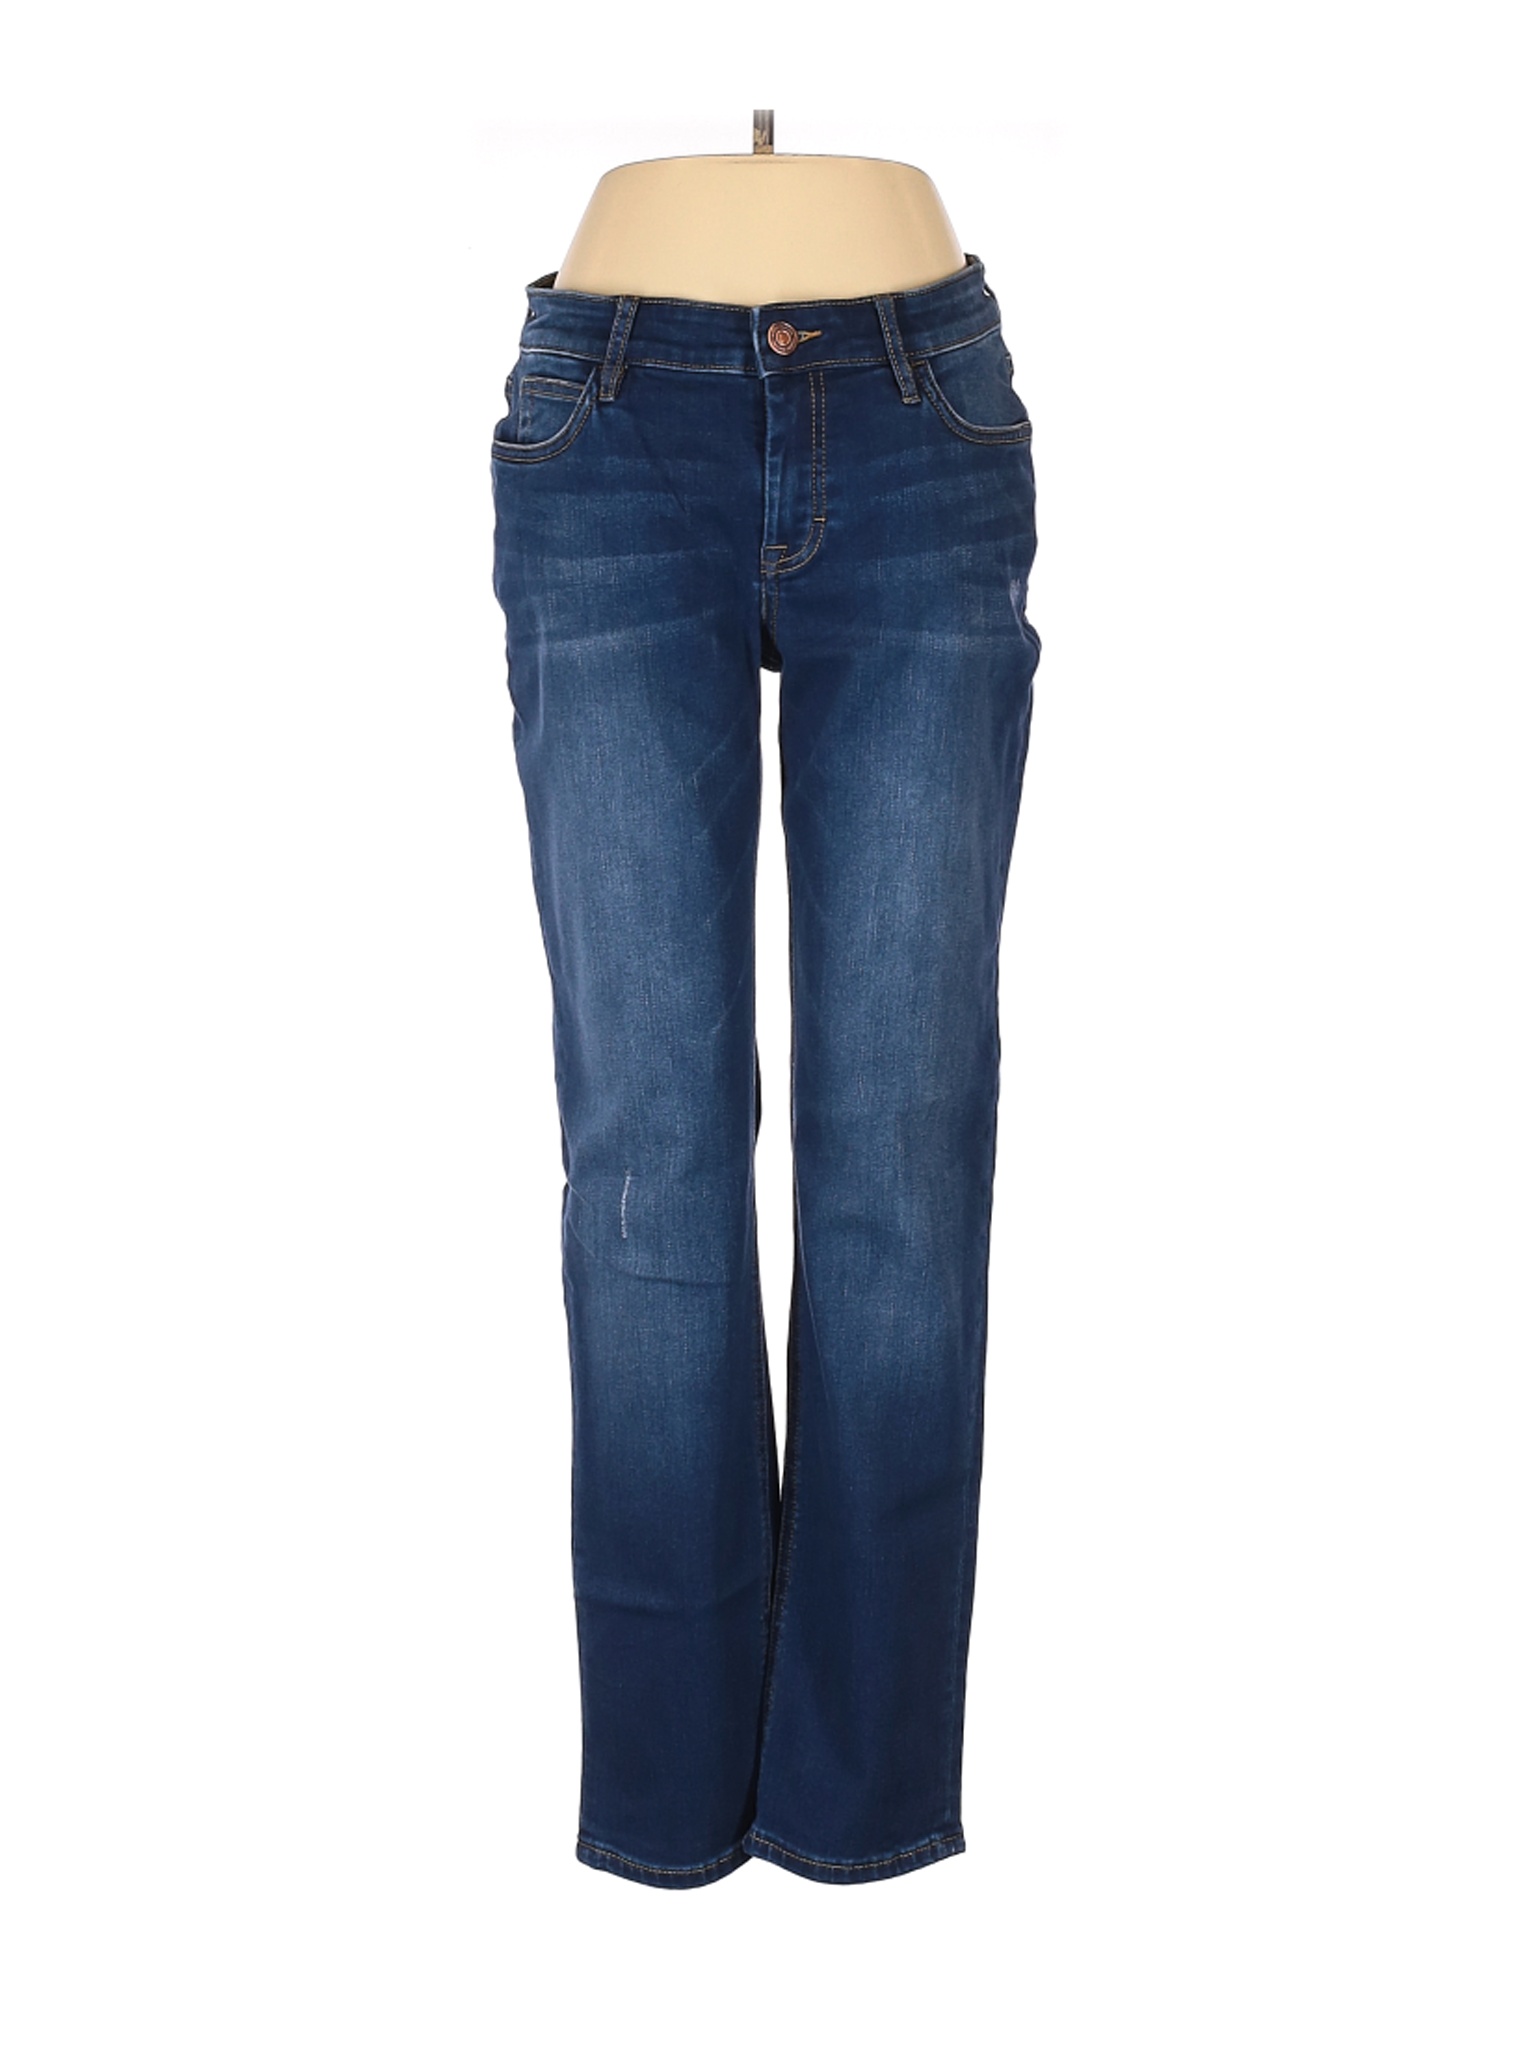 Tommy Bahama Women Blue Jeans 27W | eBay